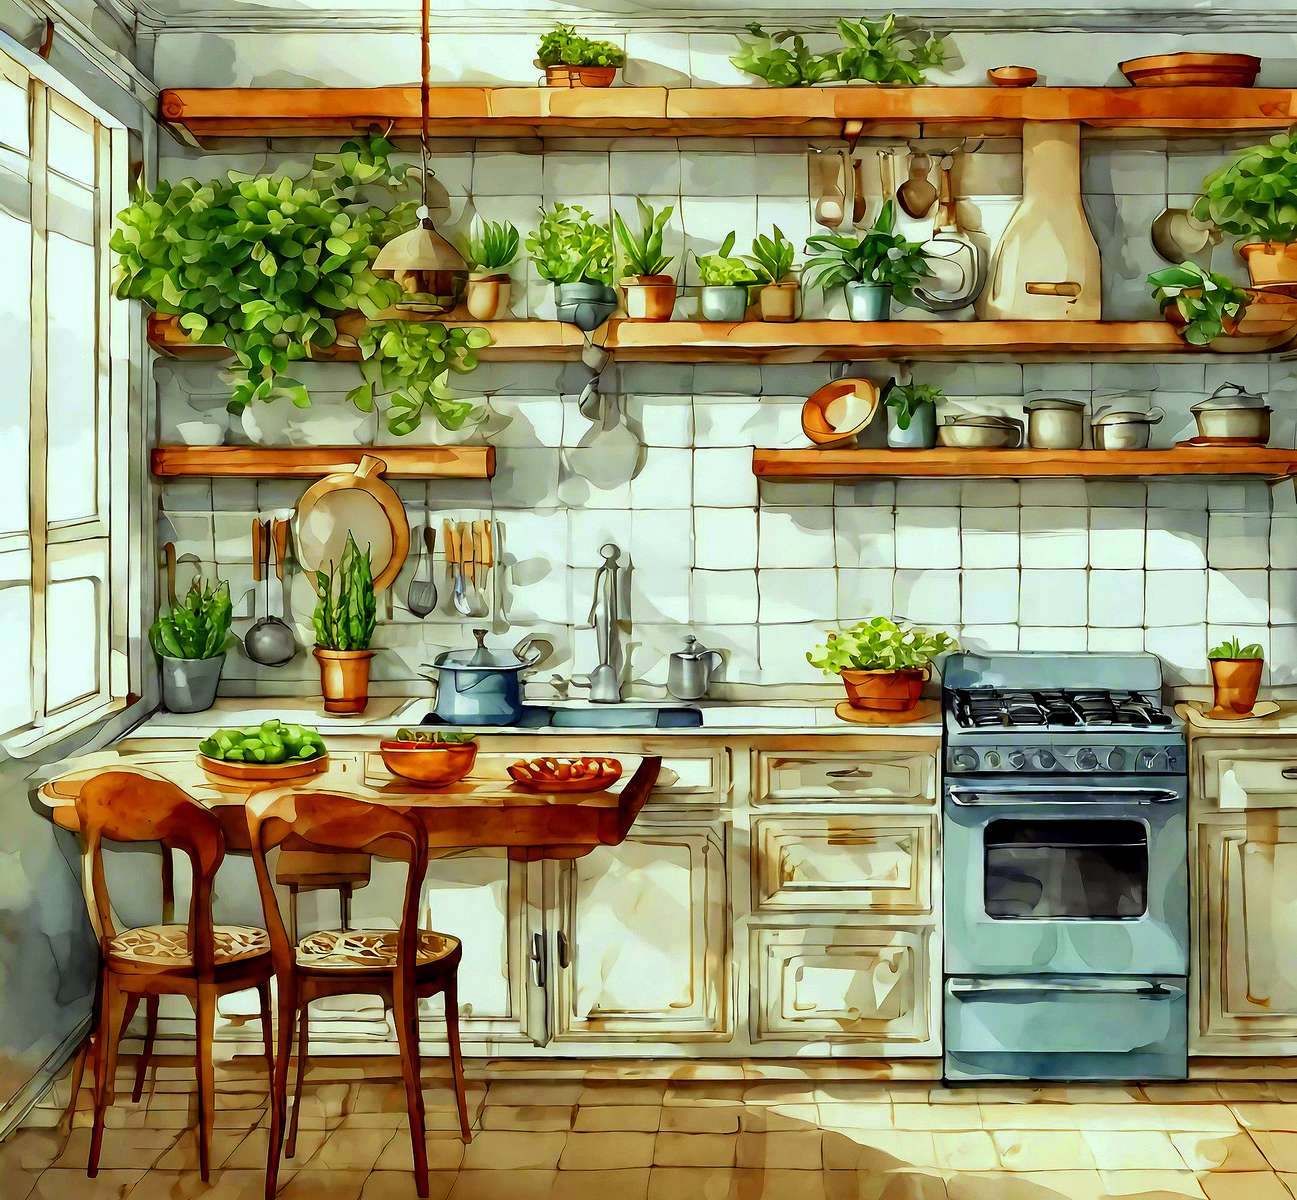 Μια κουζίνα γεμάτη βότανα online παζλ